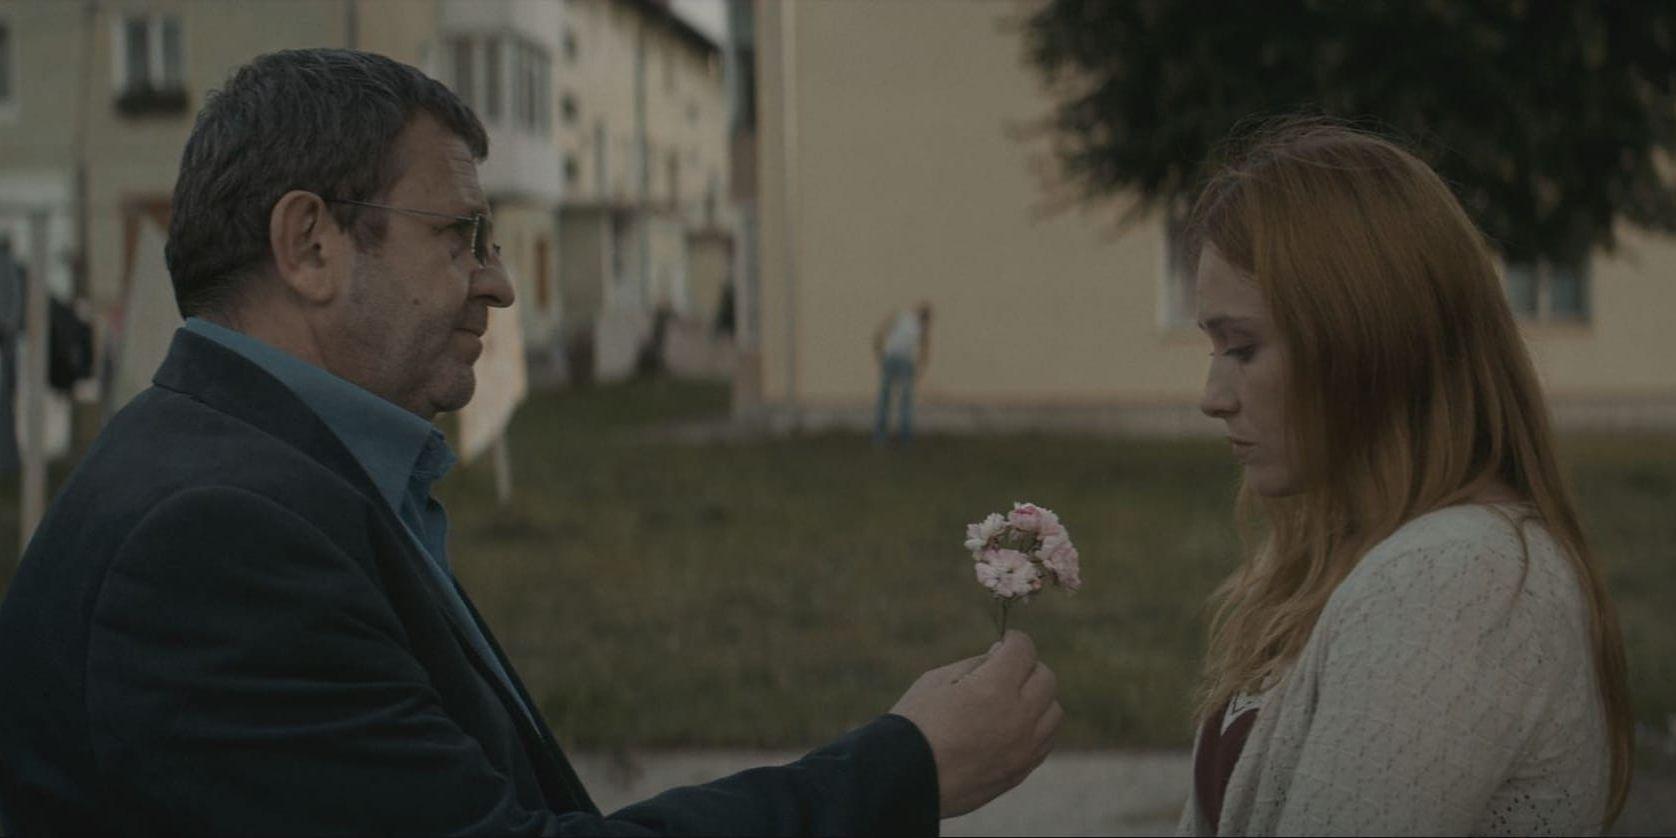 En olycka. Pappan Romeo (Adrian Titieni) försöker bagatellisera det övergrepp dottern Eliza (Maria-Victoria Dragus) utsätts för i rumänske Cristian Mungius drama Prövningen.